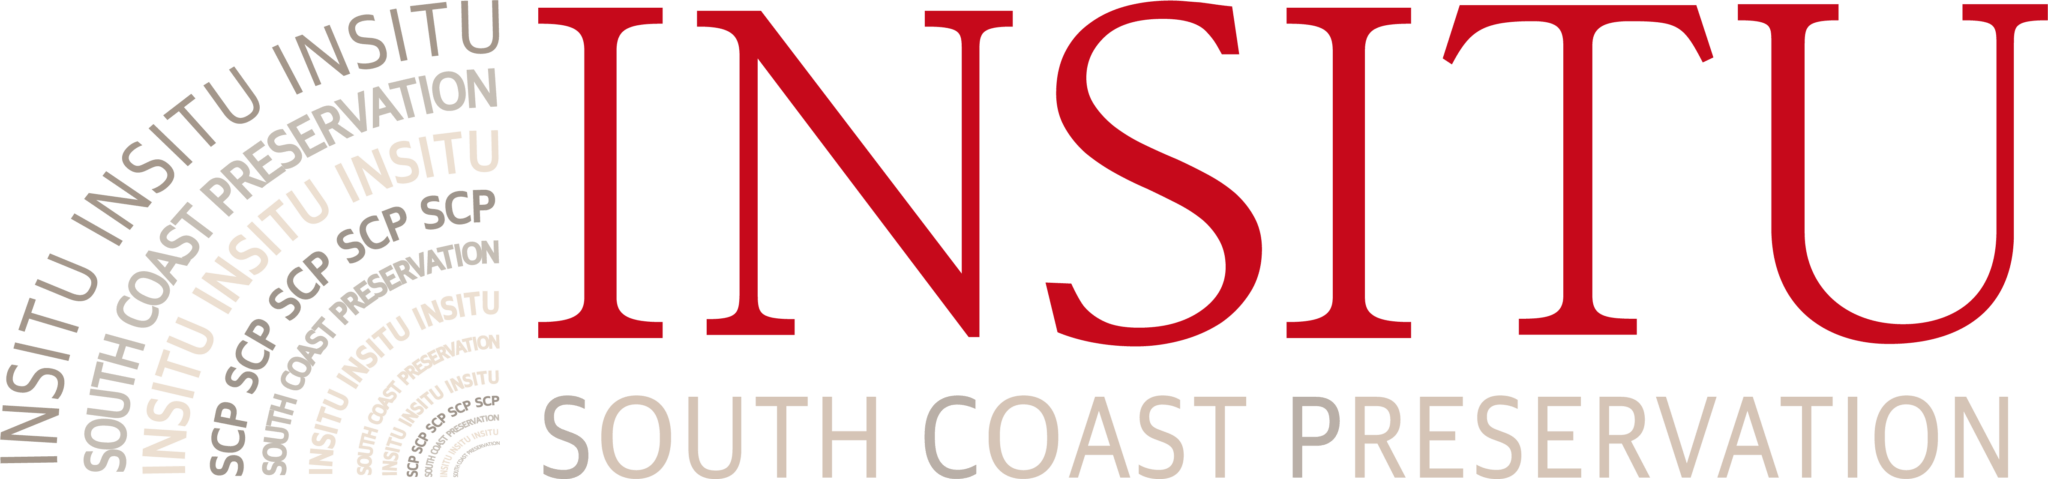 Insitu Logo - Insitu | South Coast Preservation